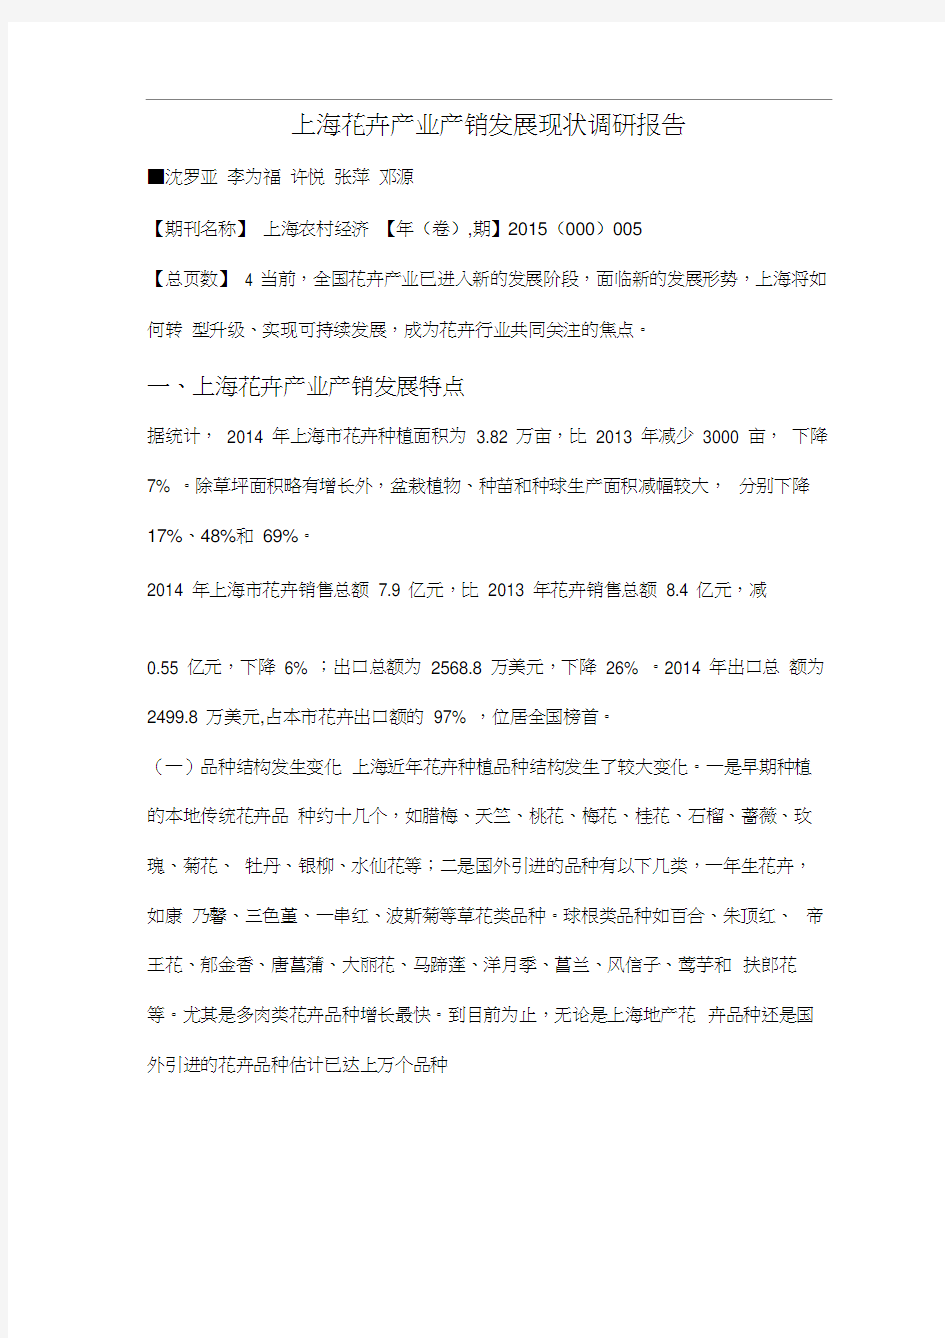 上海花卉产业产销发展现状调研报告